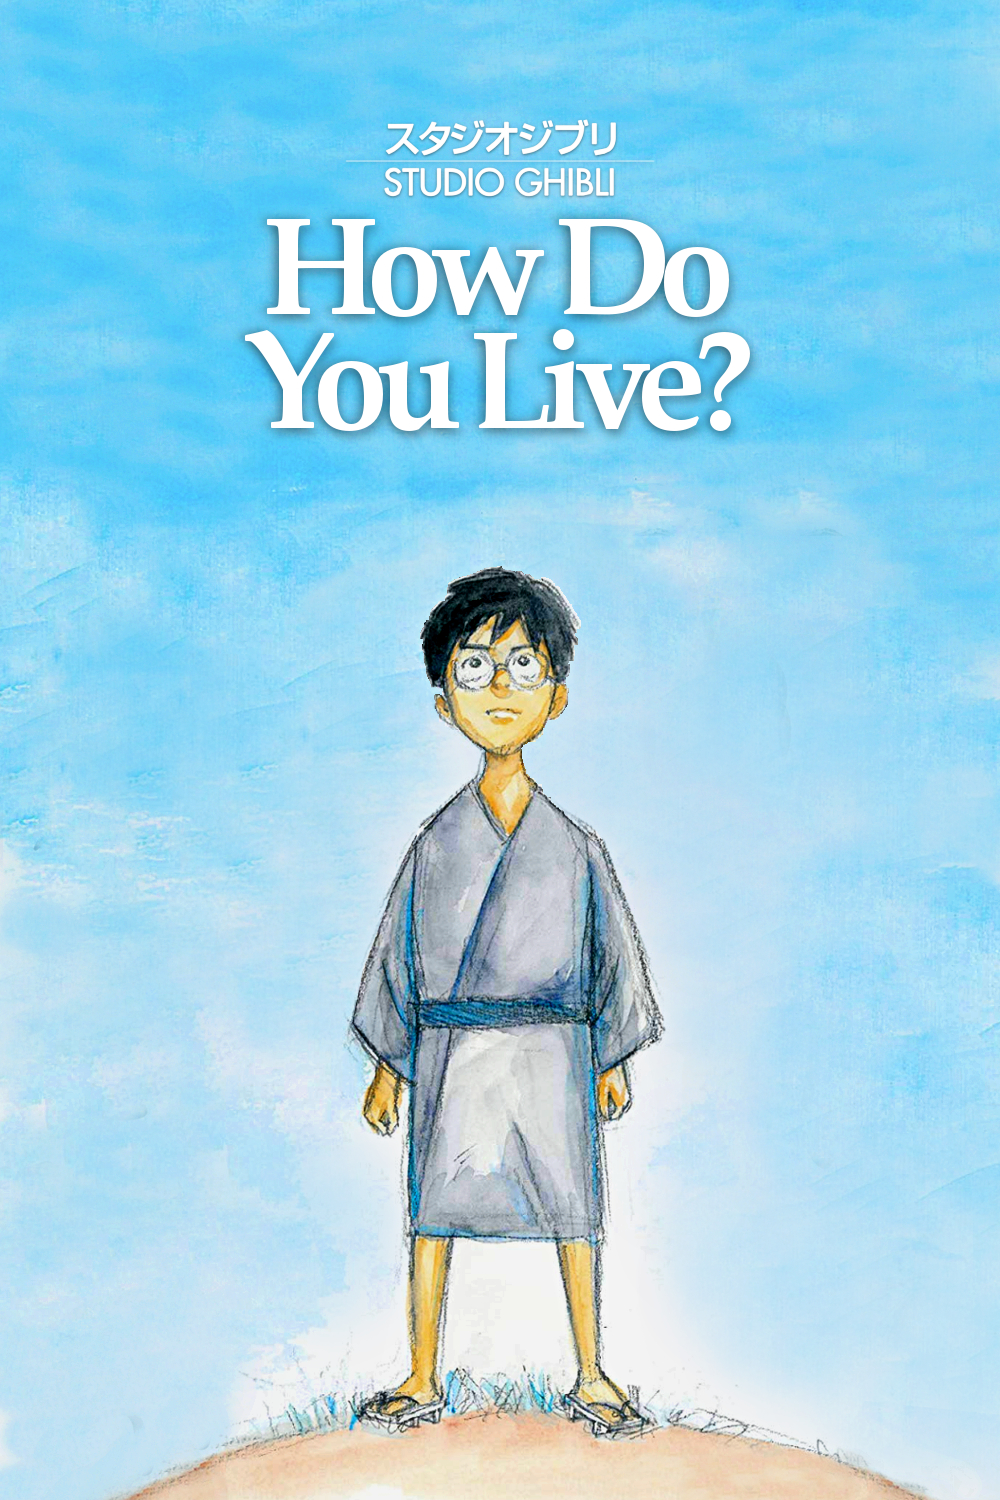 การเกษียณครั้งสุดท้ายของ Hayao Miyazaki กับผลงานชิ้นล่าสุด ‘How Do I Live?’